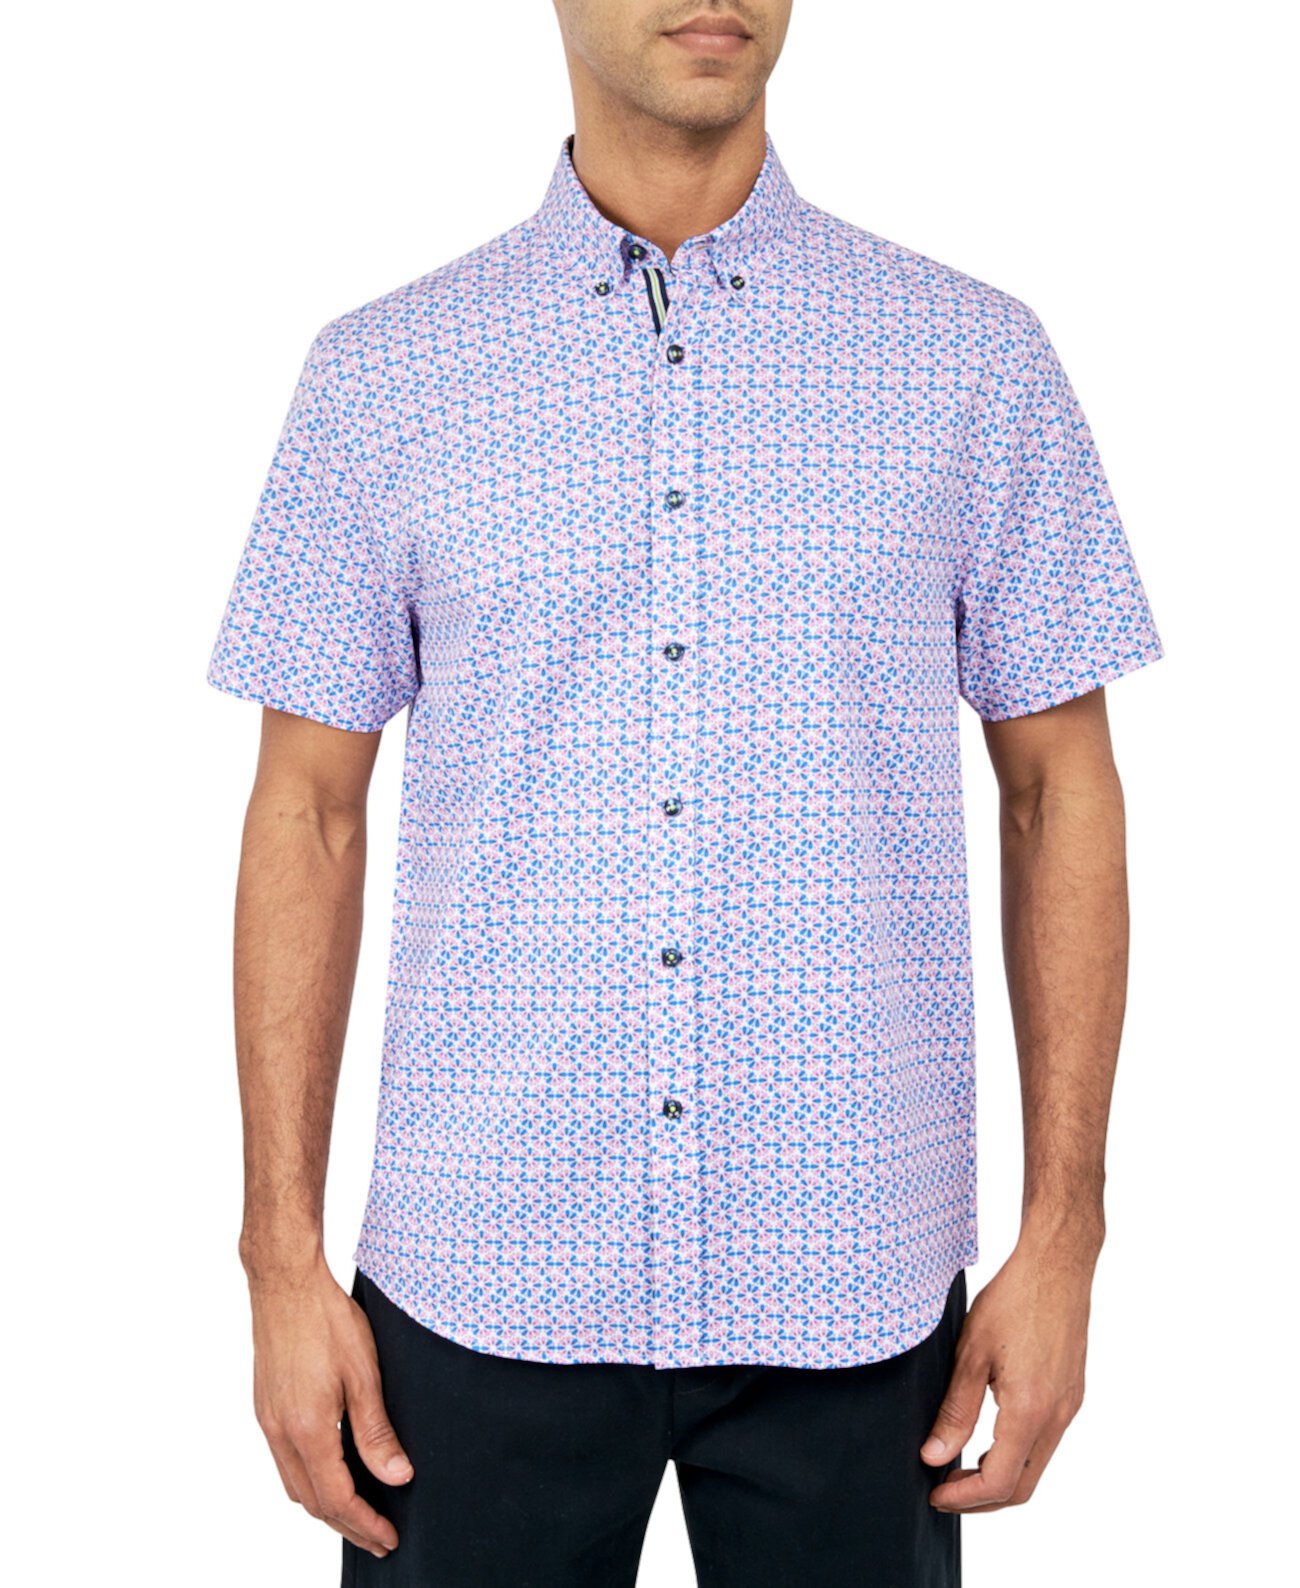 Мужская рубашка на пуговицах стандартного кроя без утюга, эластичная, с микроцветочным принтом Society of Threads